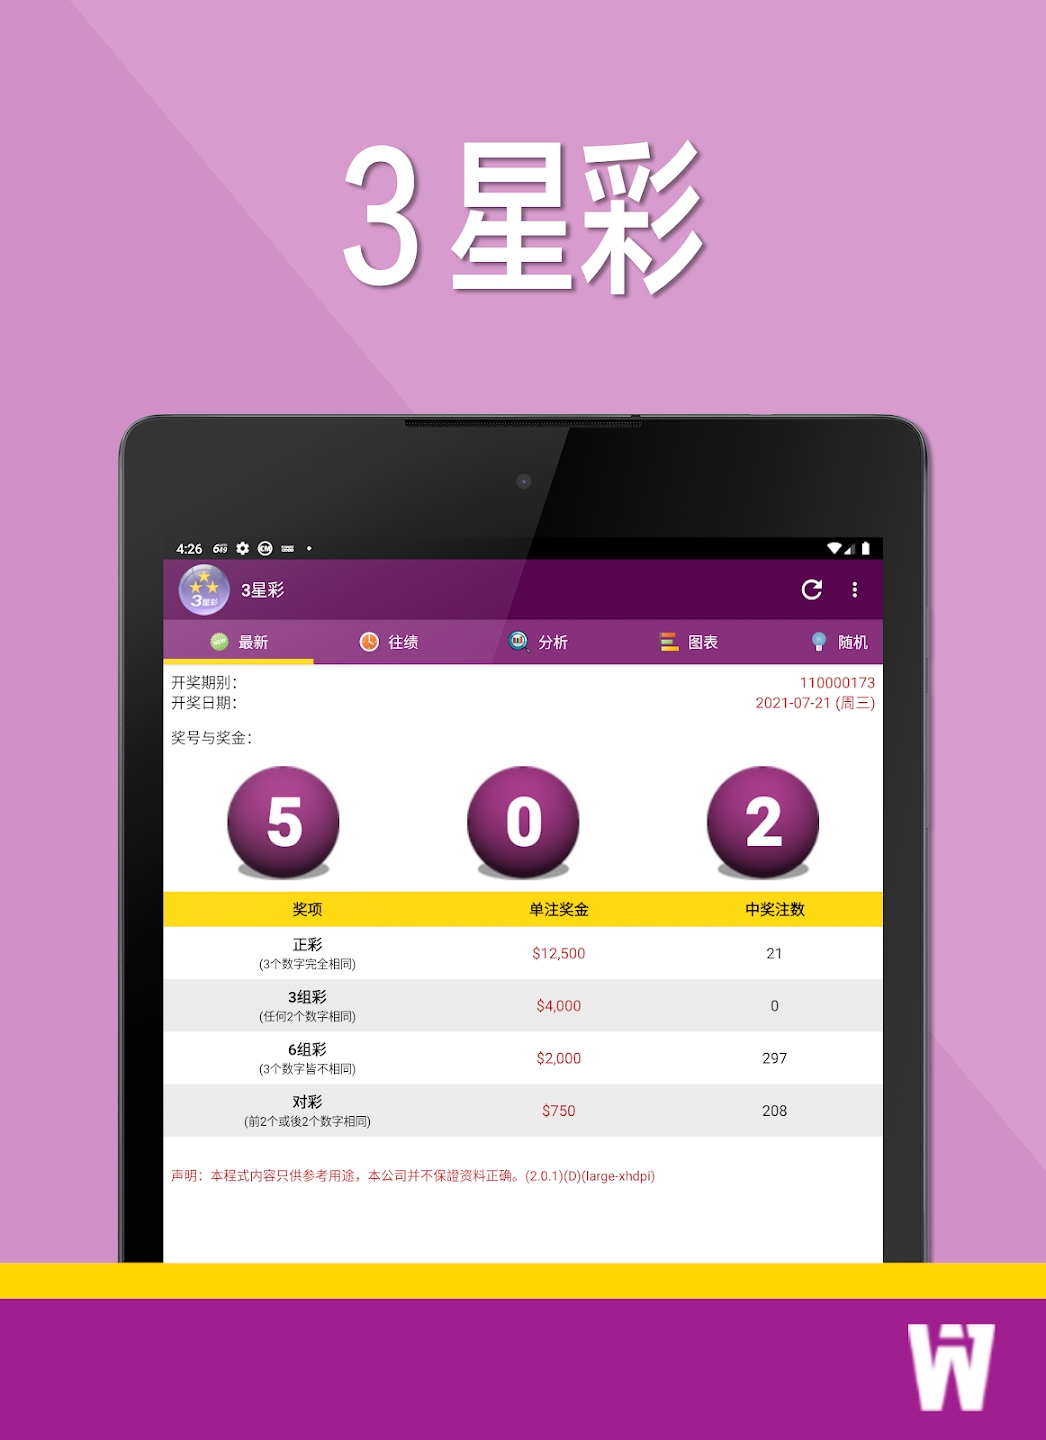 3 stars color apk Download for Android  v3 screenshot 1